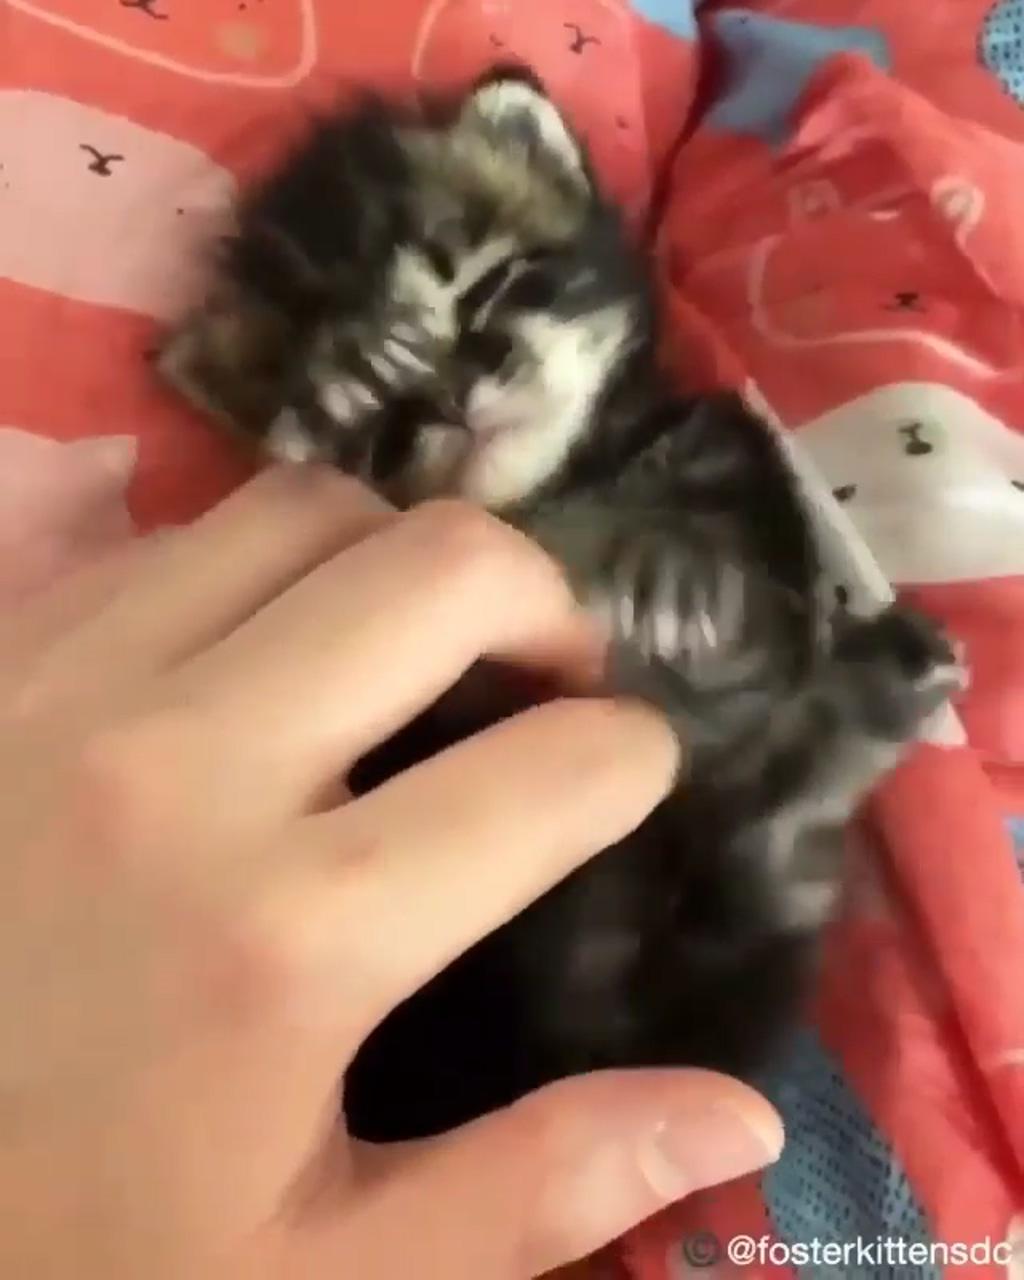 Awwwww sweetie ; cute little kittens